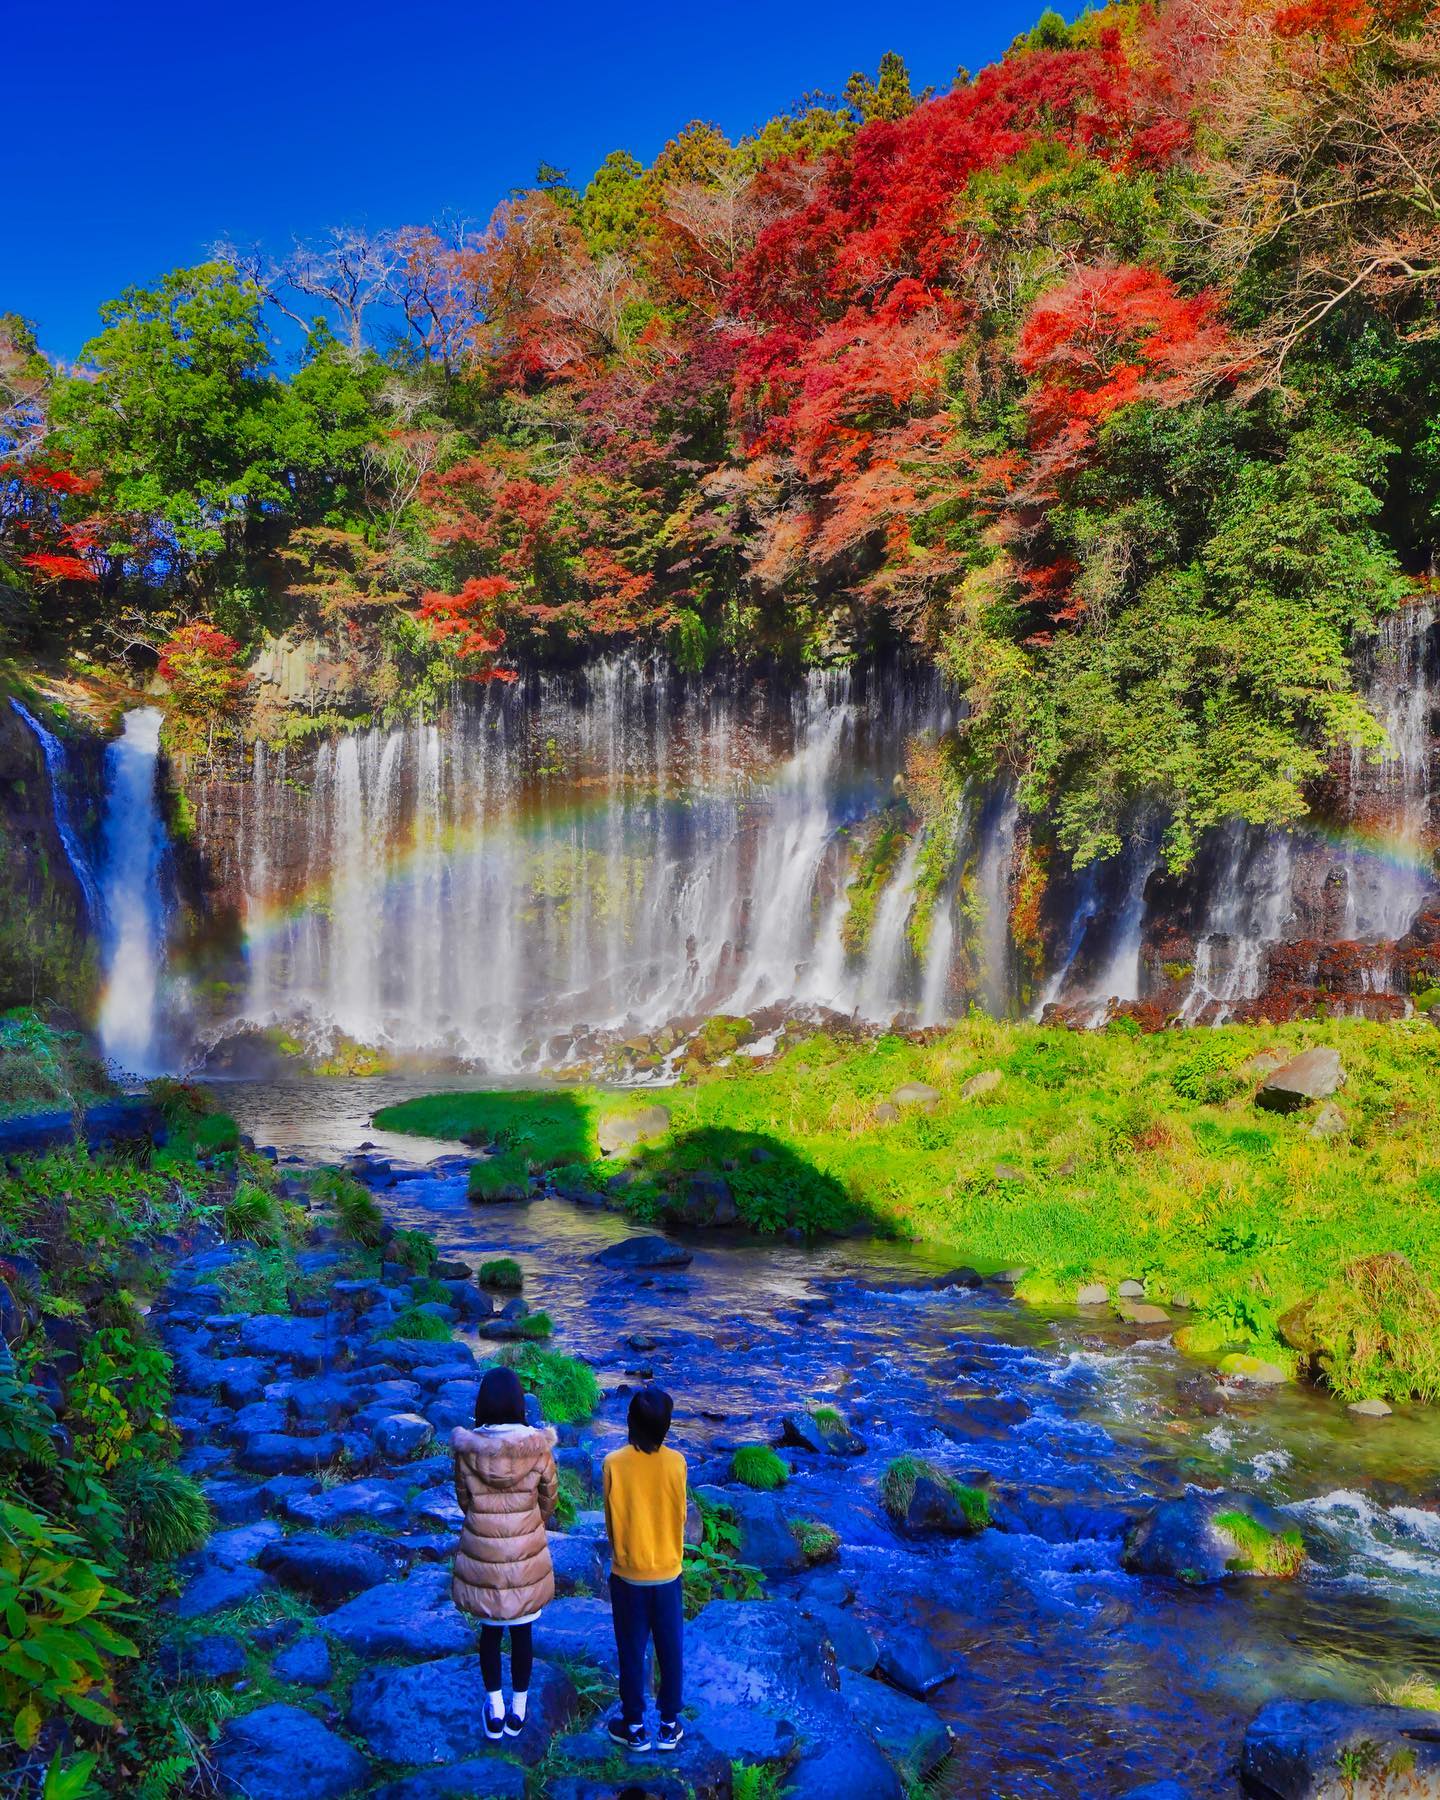 🇯🇵 【靜岡 Shizuoka】白絲瀑布
🌊 獲選為日本「觀光百選瀑布」第一名的白絲瀑布「白糸の滝」位於靜岡線的富士宮市
🍁 秋天伴隨紅黃深綠色彩，是靜岡著名紅葉名所，水氣折射形成的彩虹更增添浪漫氛圍
❤️ 水源主要來自富士山的天然湧水從 20 米高墜下的白絲瀑布，數百條的水流又薄又細緻，宛如絲緞一樣因而得名#japantravel #shizuoka #靜岡 #富士宮 #karuizawashiraitofalls #白糸の滝 #白絲瀑布 #把世界當教室🌍 #travelwithmikeanna